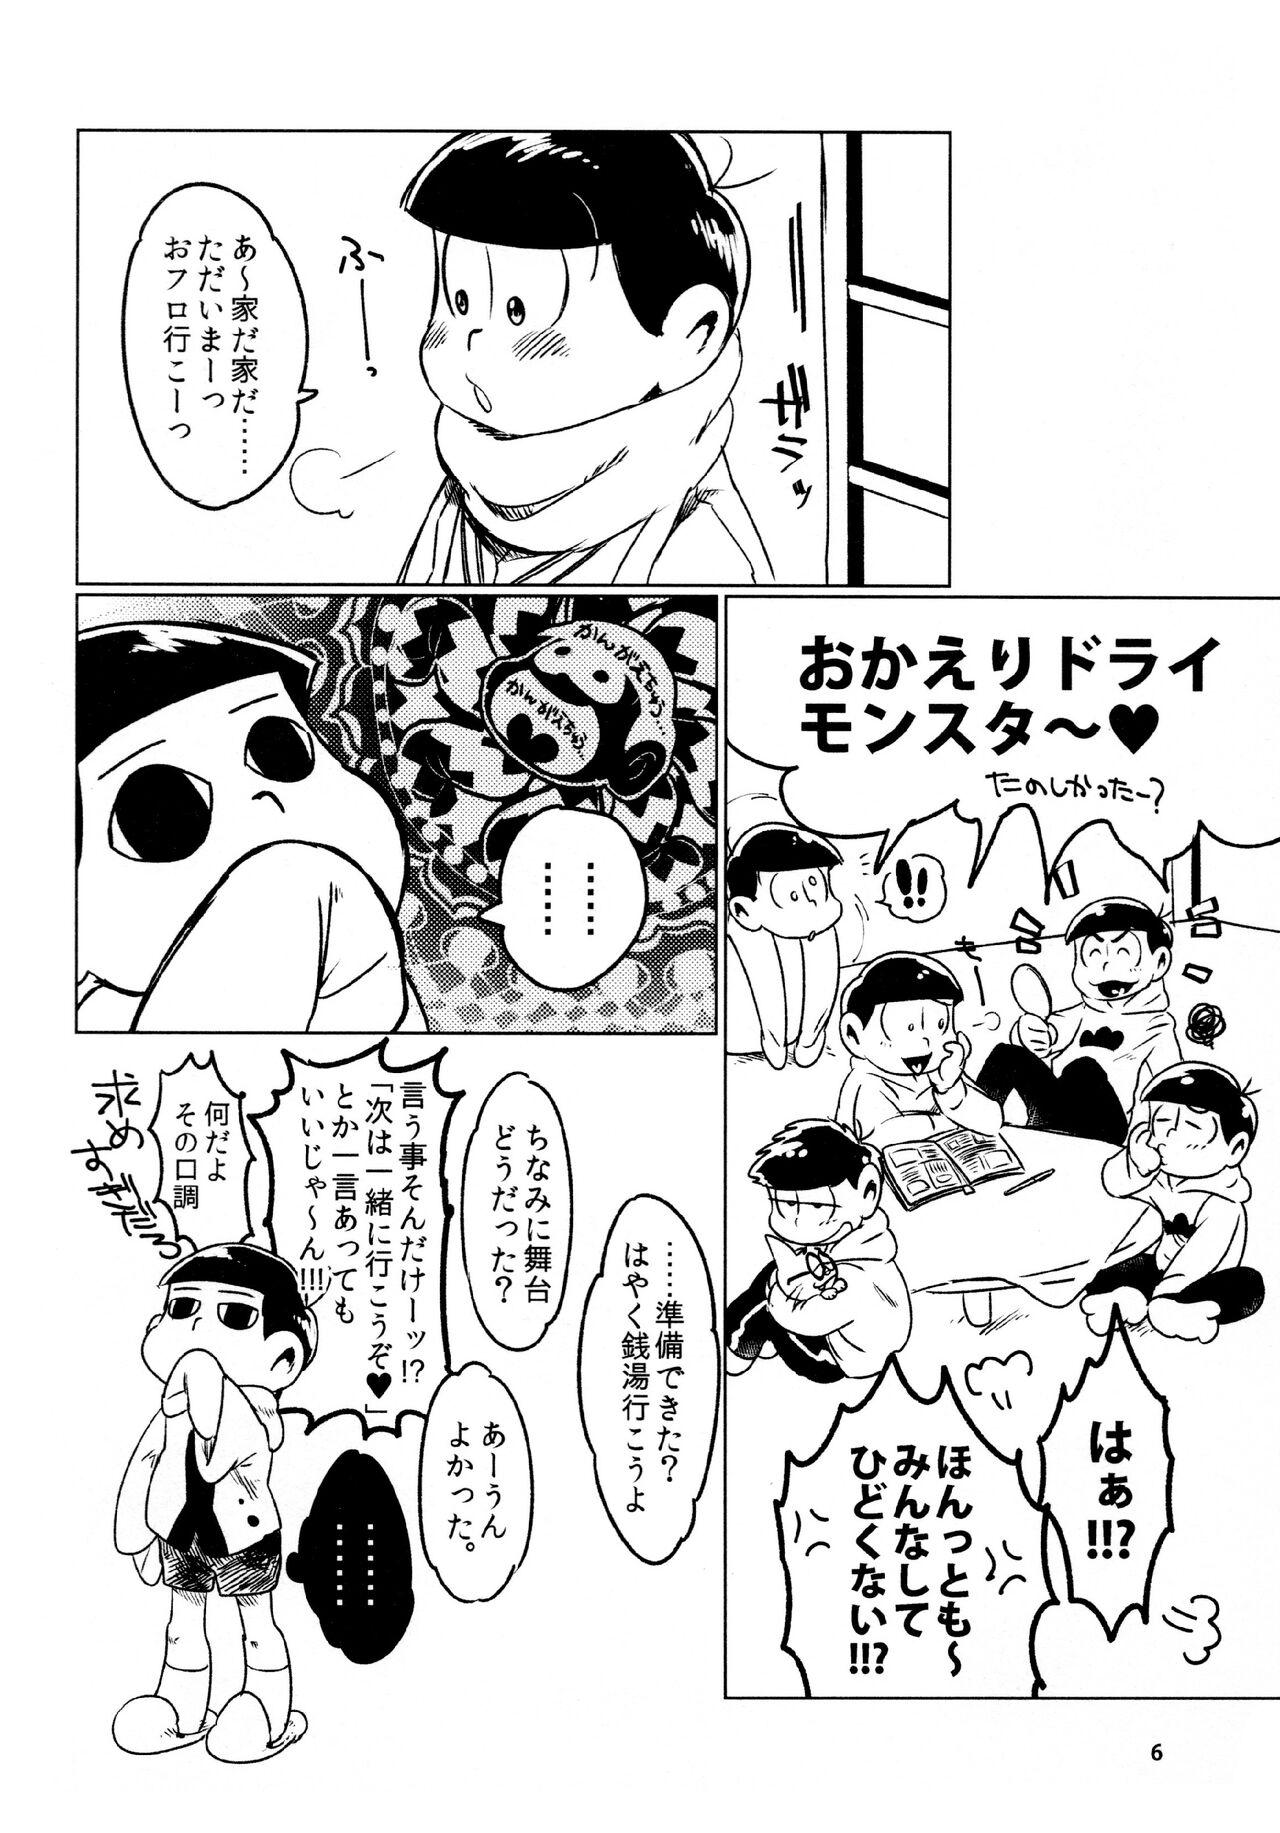 Piercing todomatsu bishi yonurekeikaku - Osomatsu-san Cojiendo - Page 6